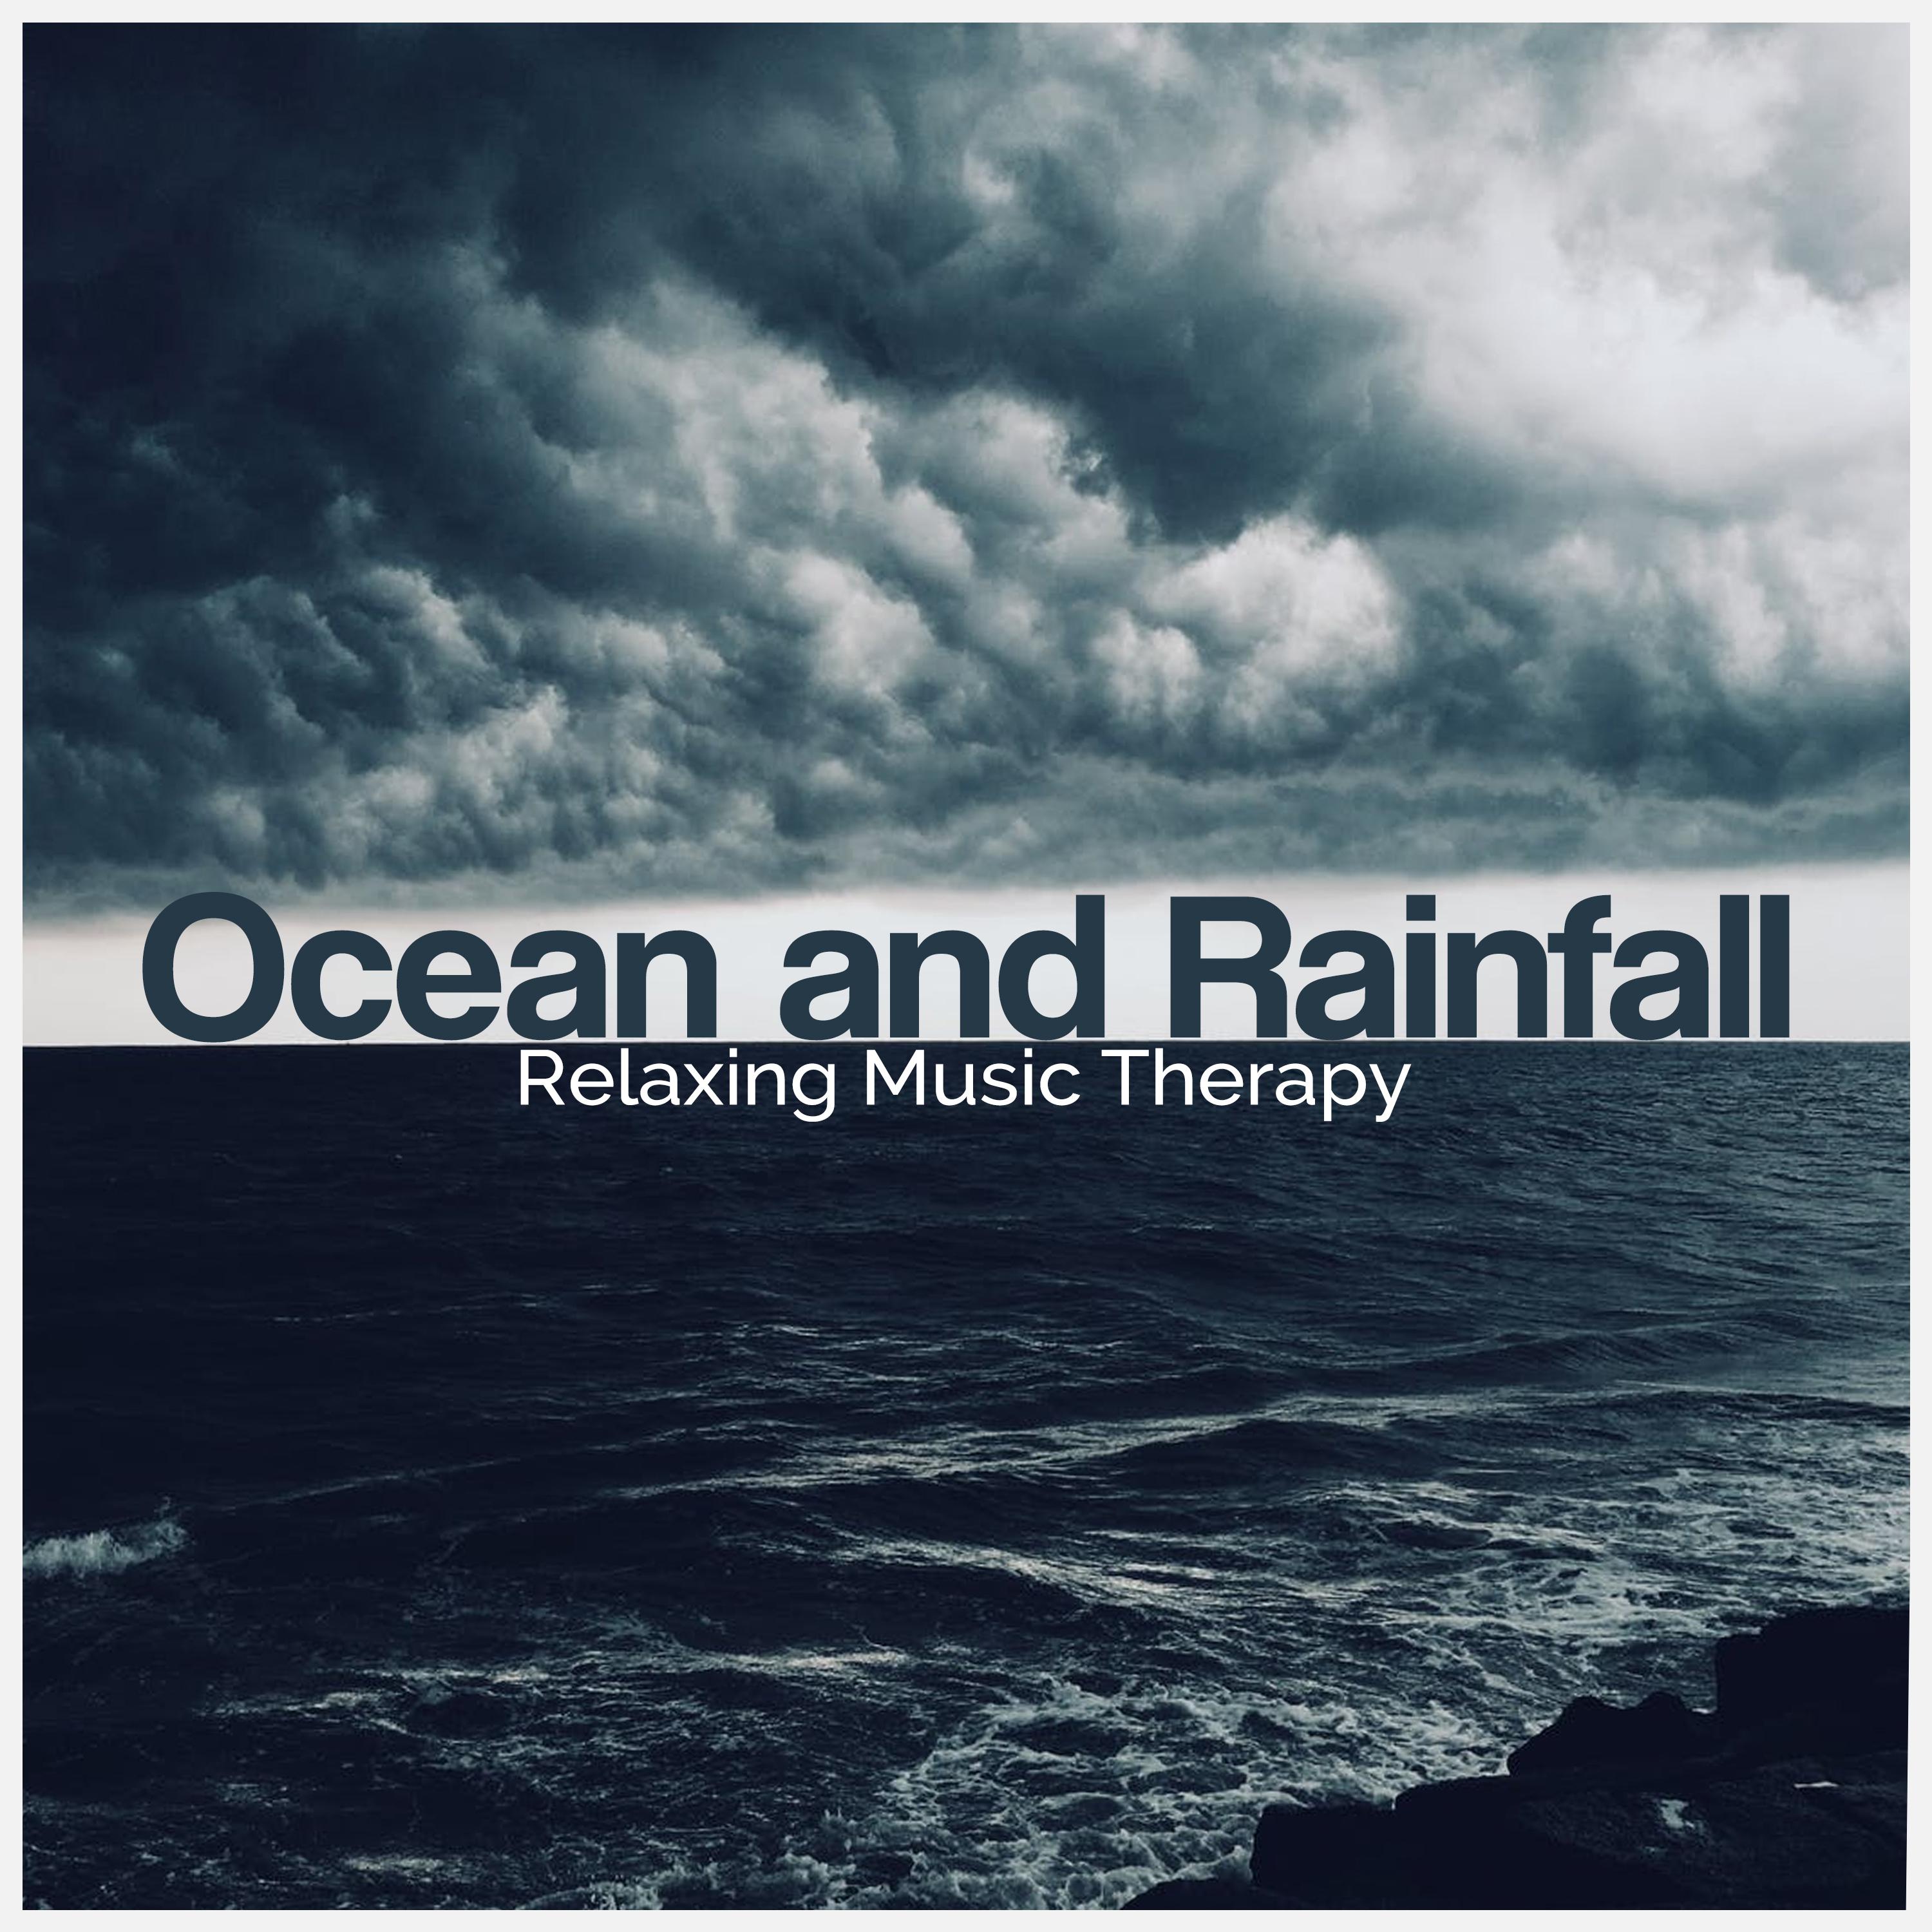 Ocean and Rainfall